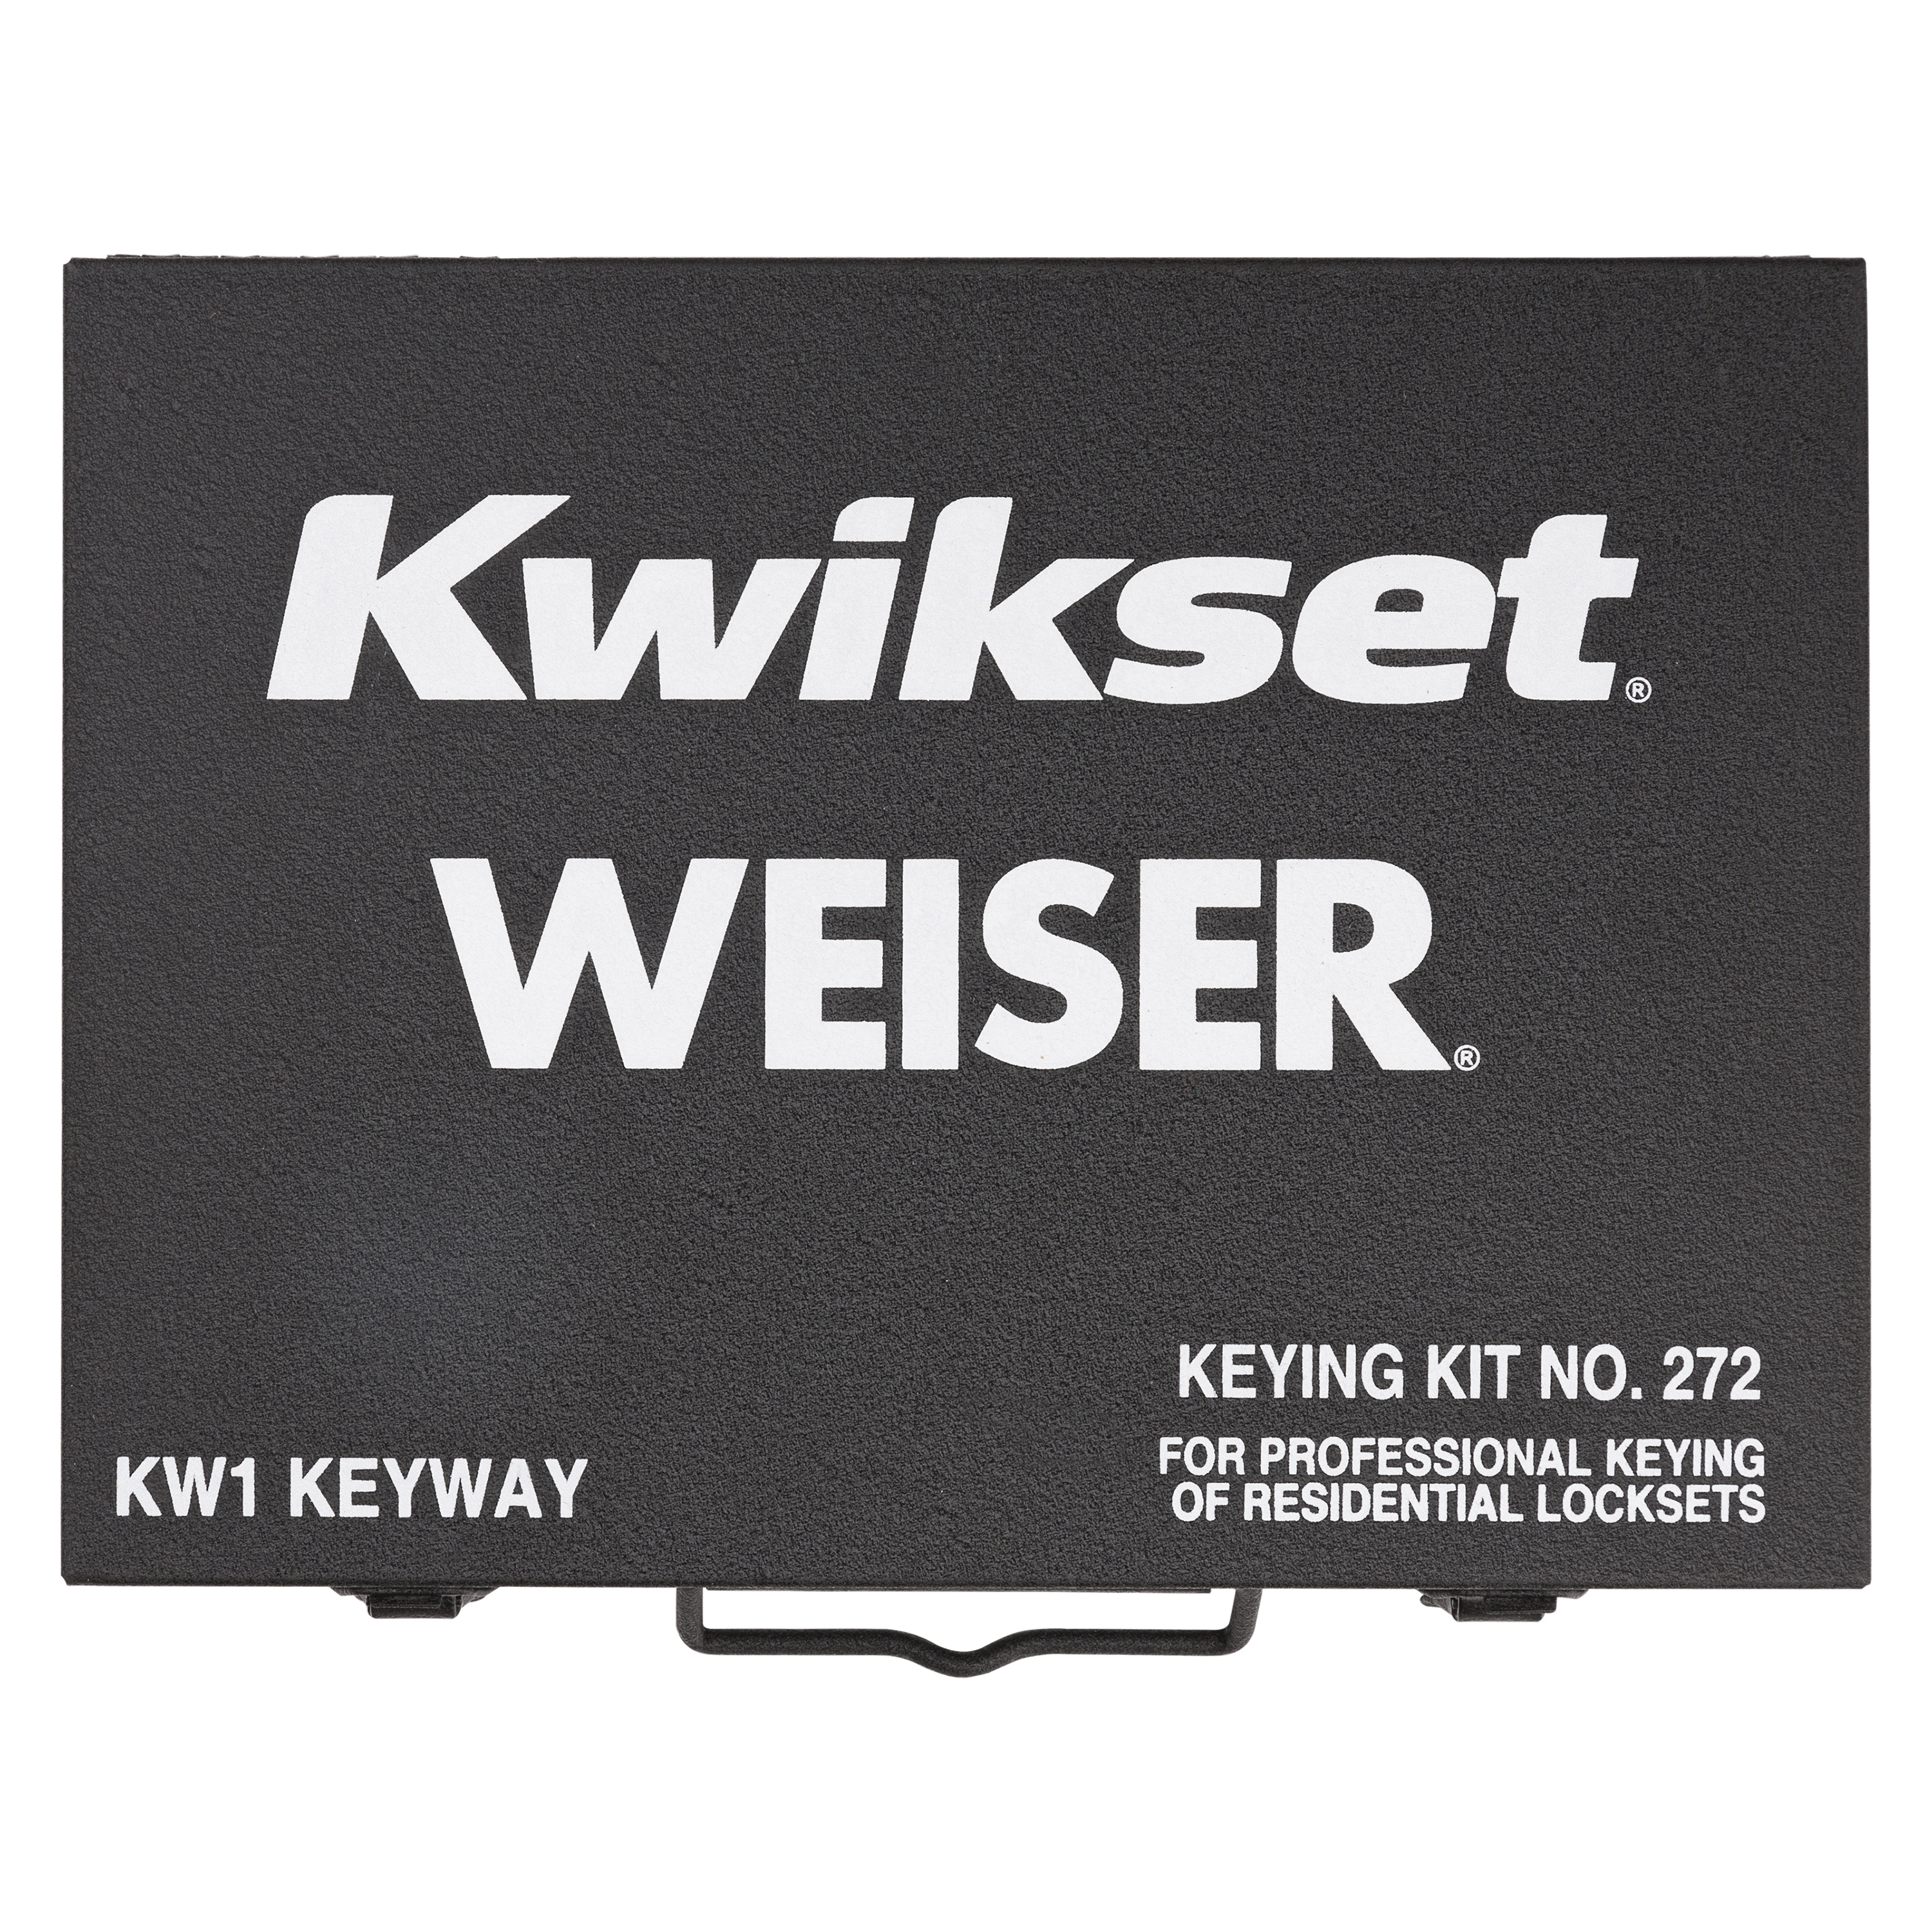 92720-001 Large Keying Kit